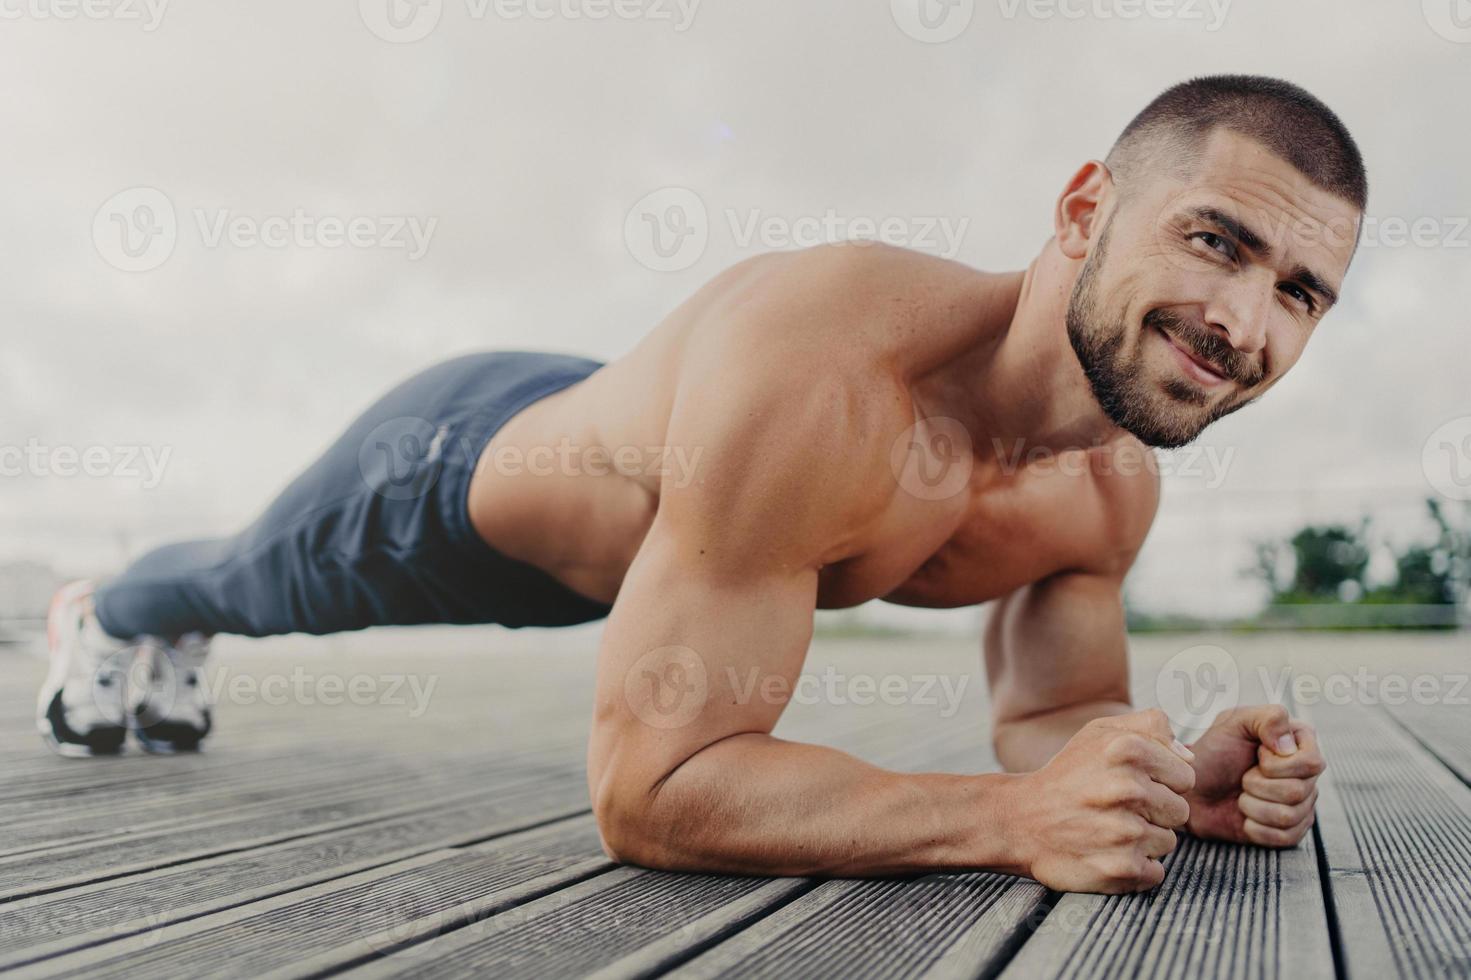 training und gesundes lebensstilkonzept. zufriedener muskulöser bärtiger junger mann steht in plank-pose, macht sporttraining im freien, sieht mit entschlossenem ausdruck aus, konzentriert sich darauf, besser zu werden foto